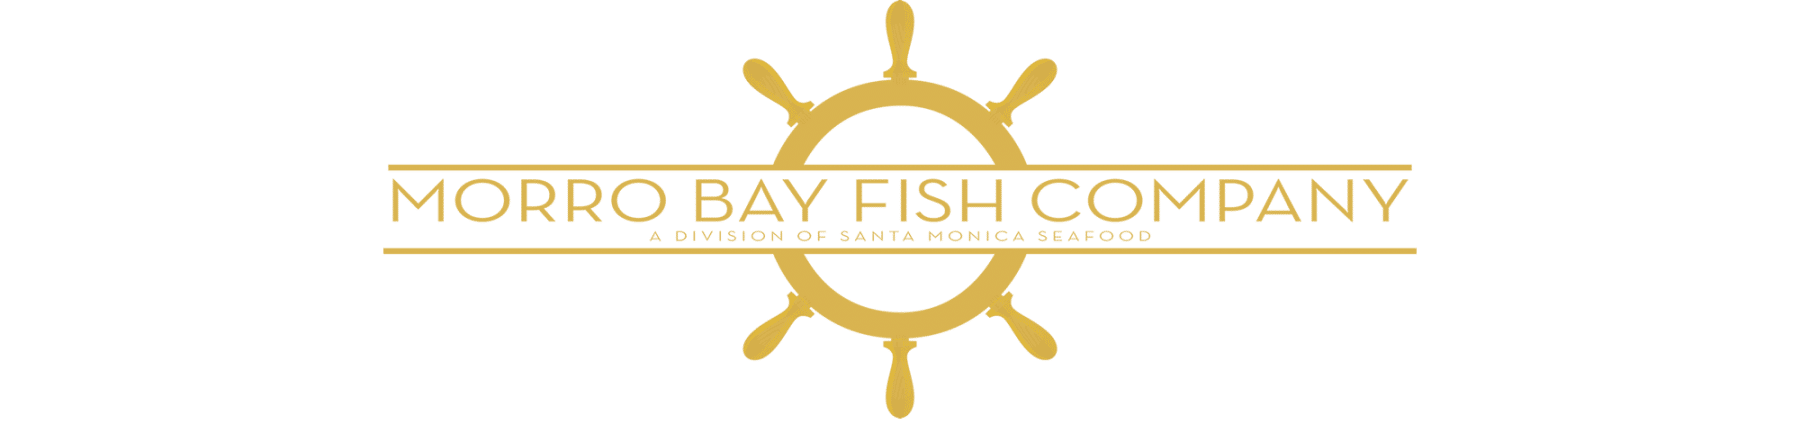 Morro Bay Fish Company Logo